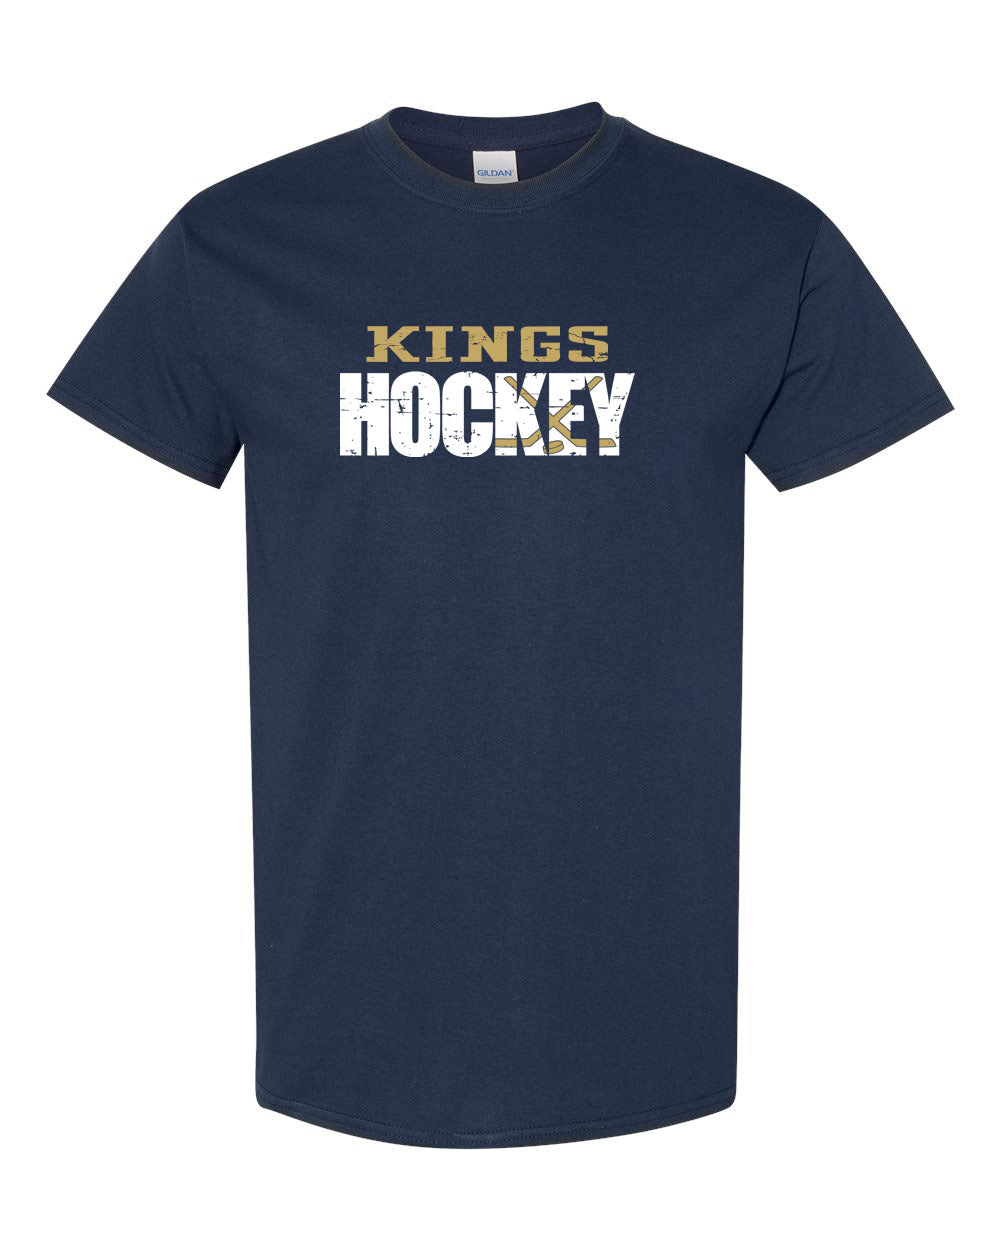 Kings Hockey Distressed T-Shirt